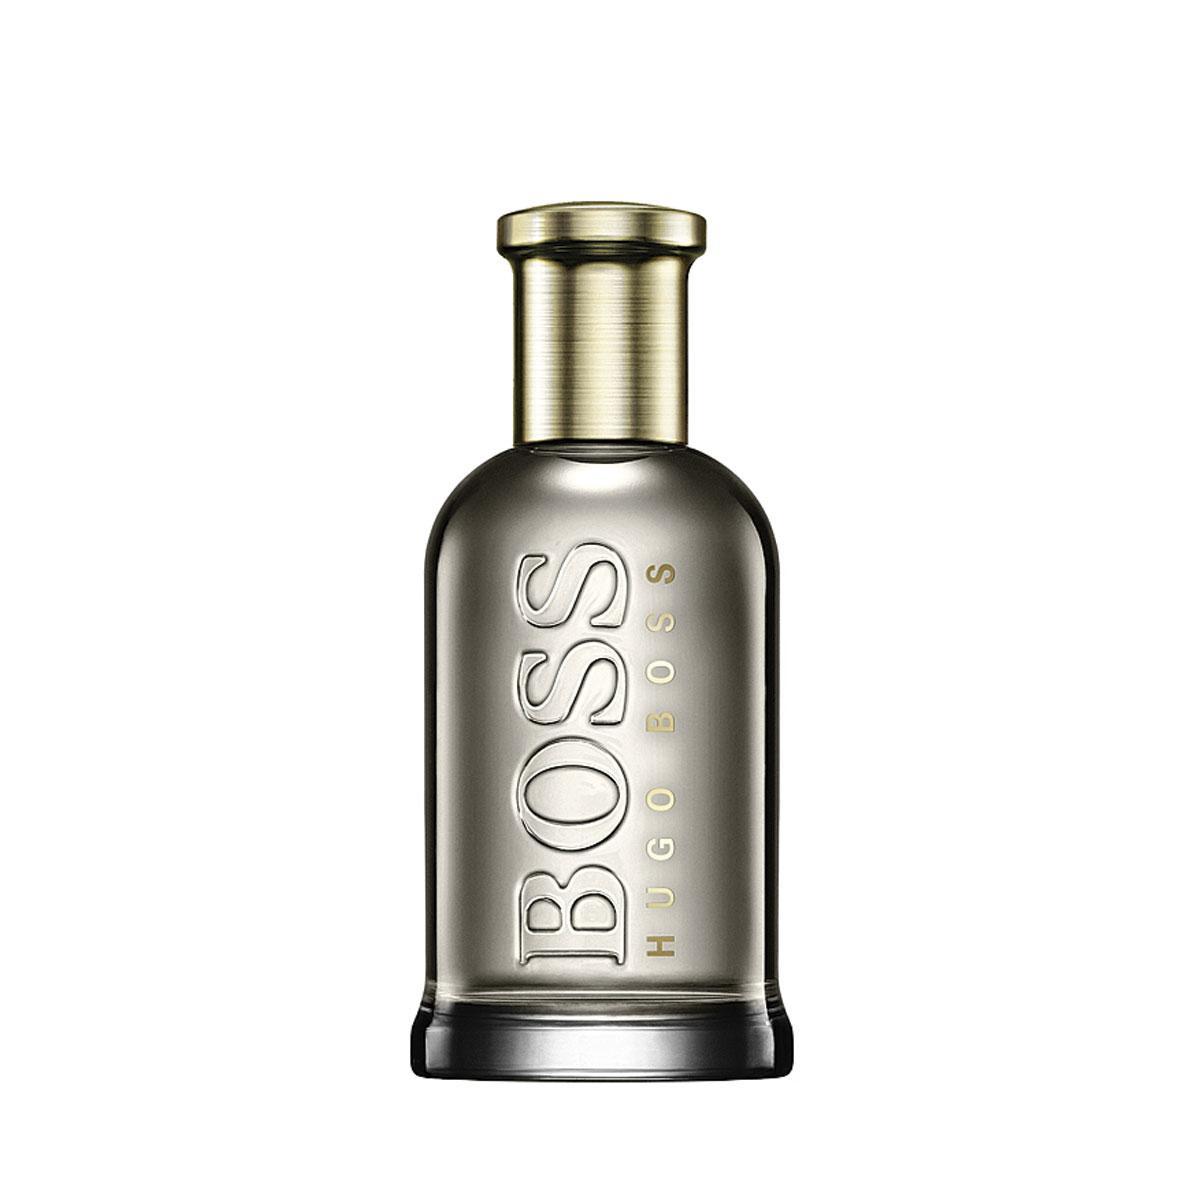 Boss Bottled Eau de parfum. De man: Chris Hemsworth. De look: van joggingpakken tot het kenmerkende pak van het merk. De stad: New York.